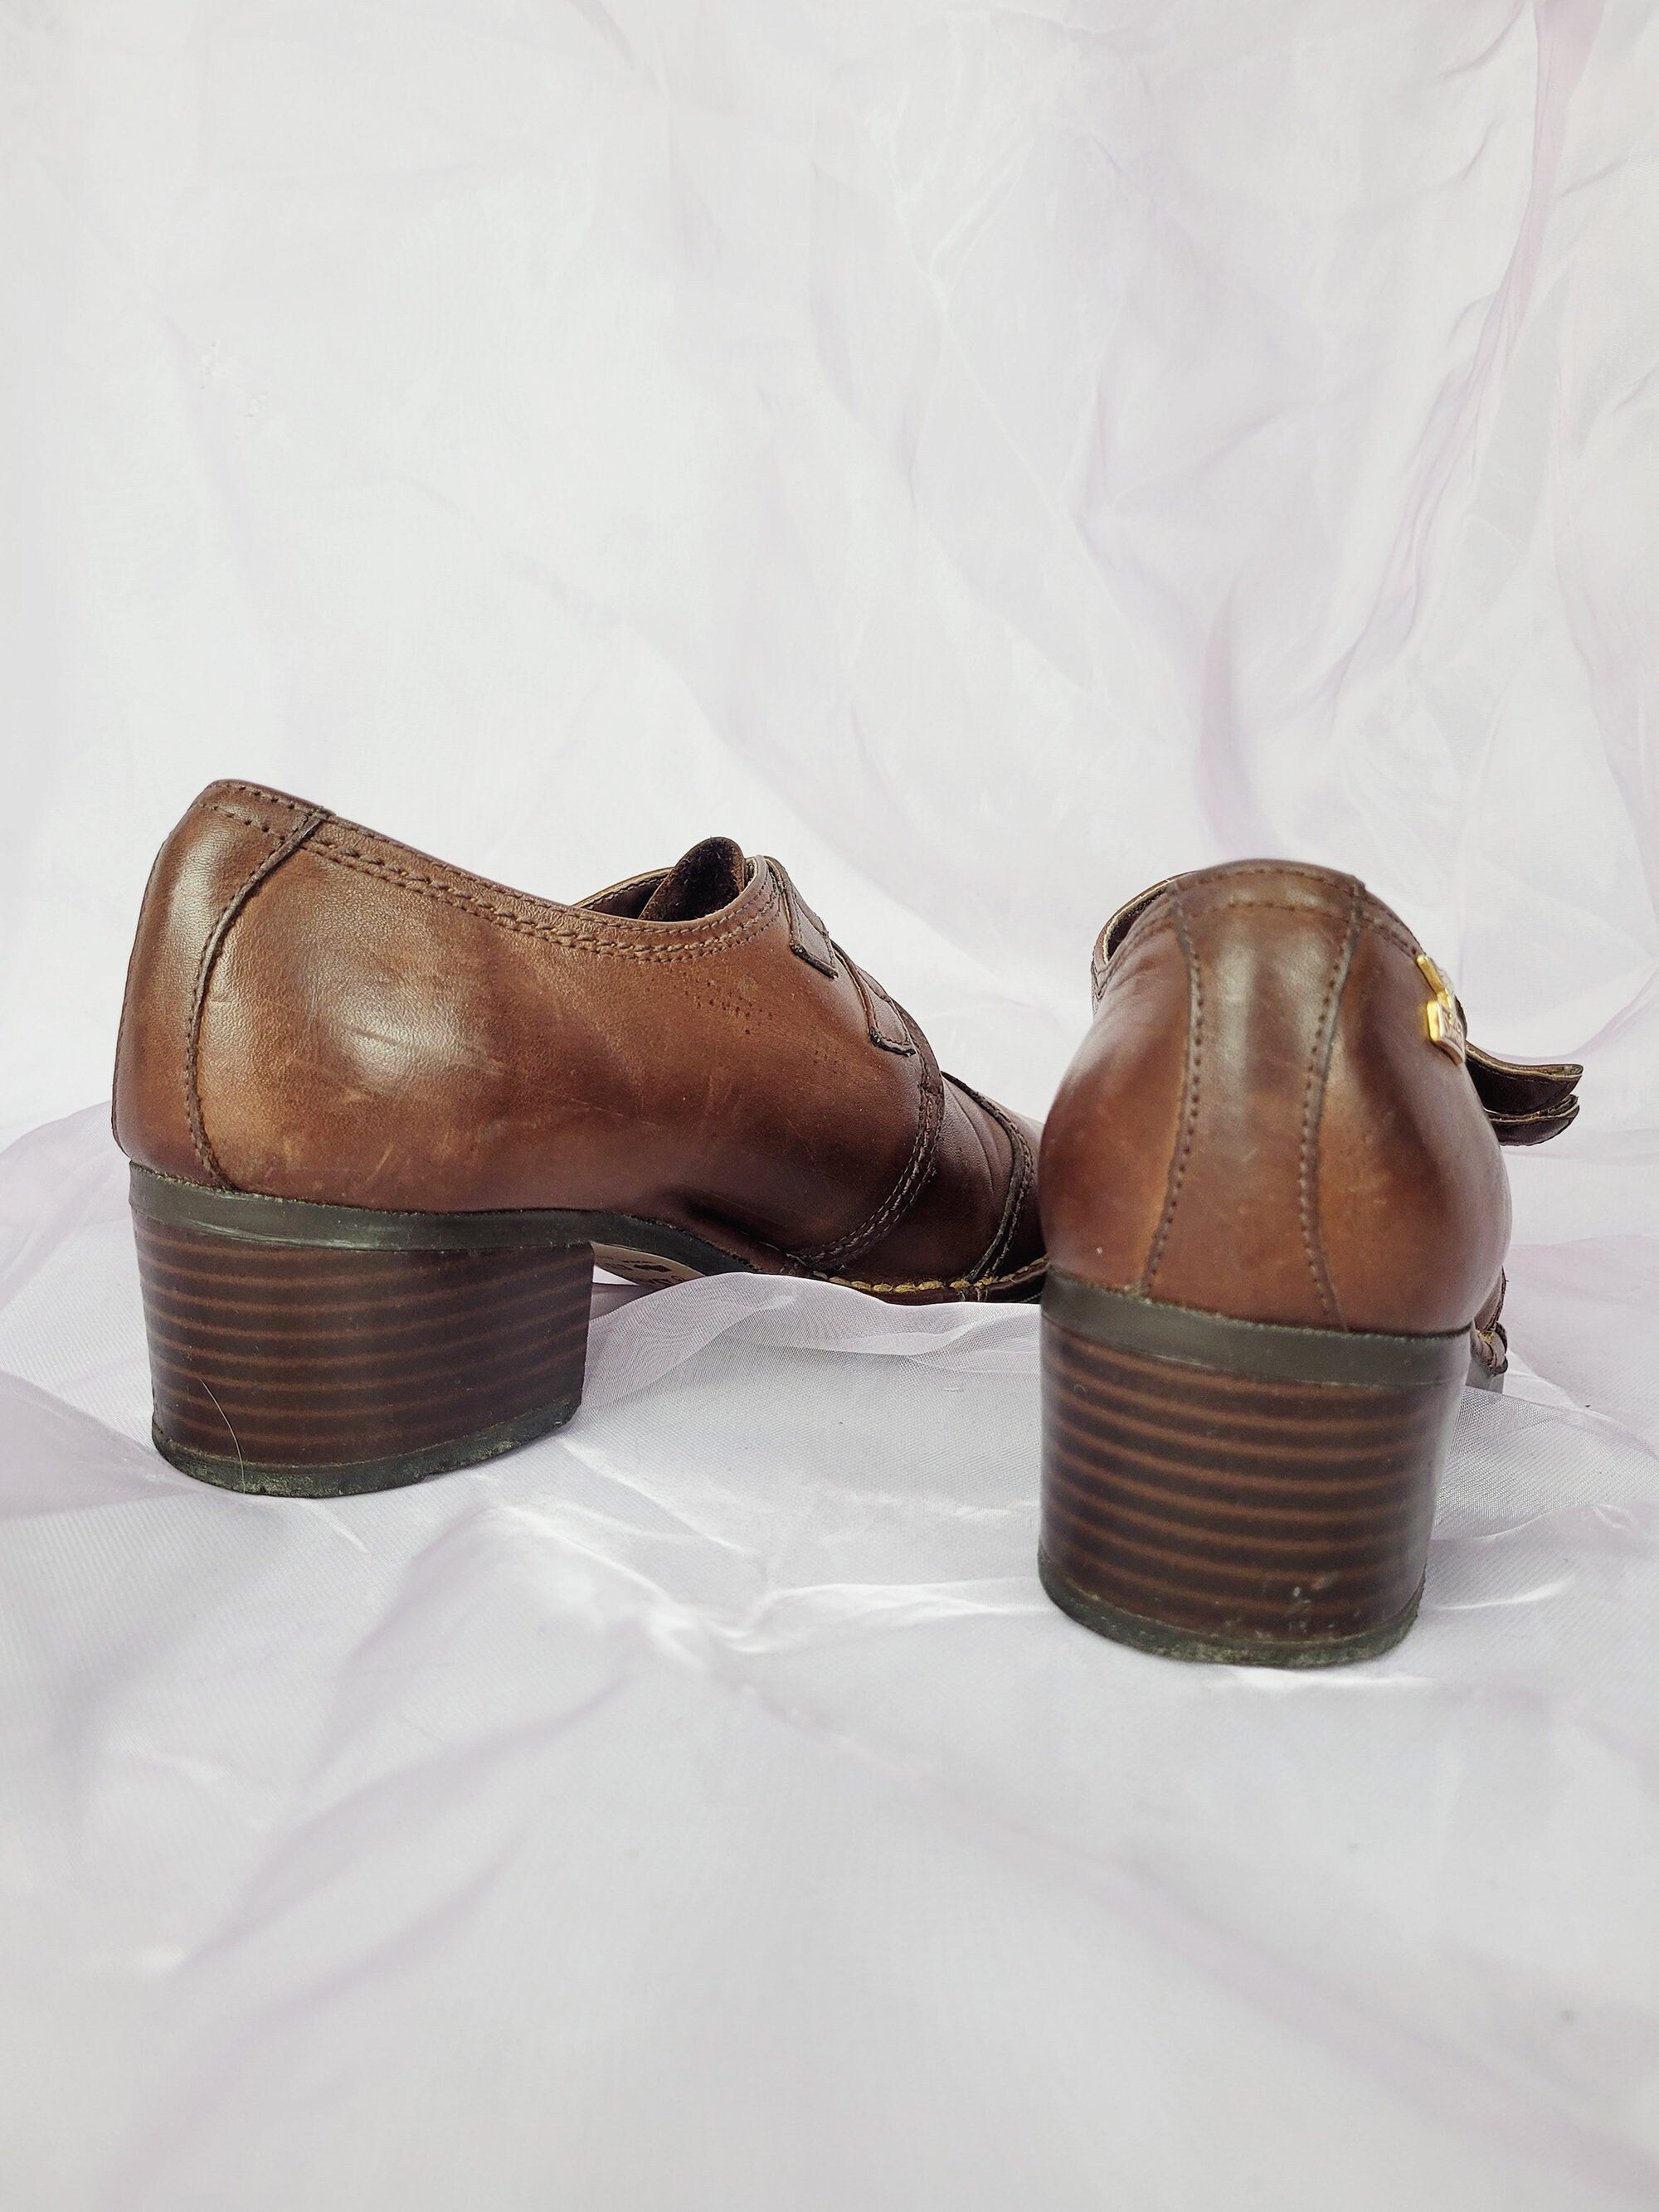 Vintage 90s brown leather mid heels Western shoes